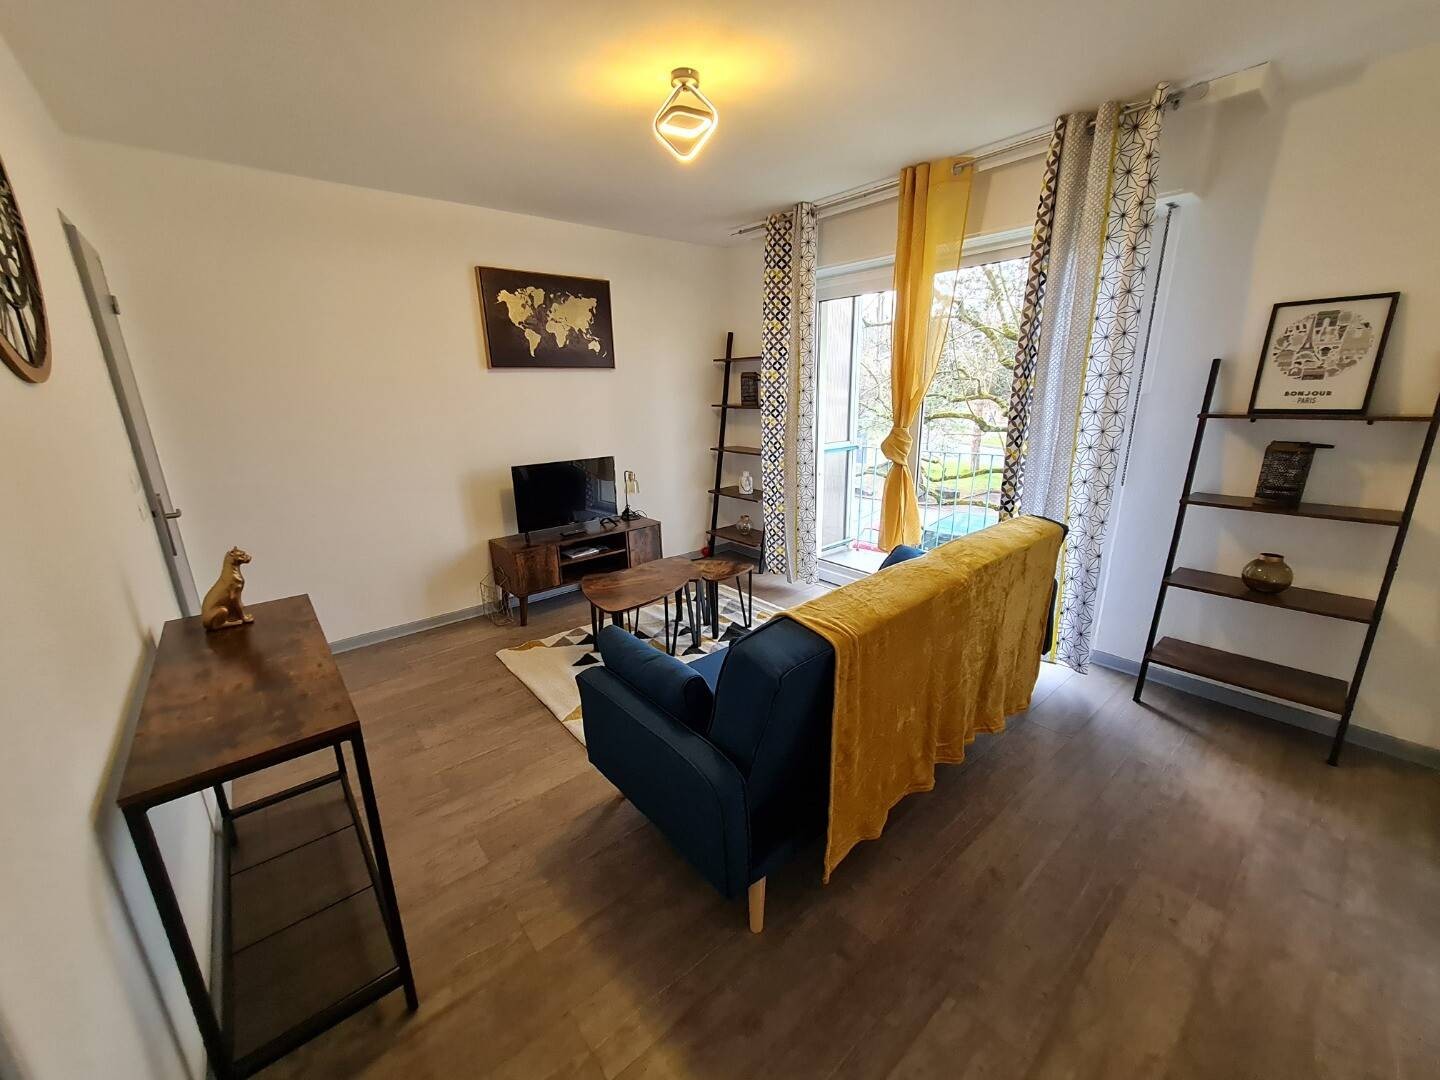 Alquiler de habitación en piso compartido en Mulhouse